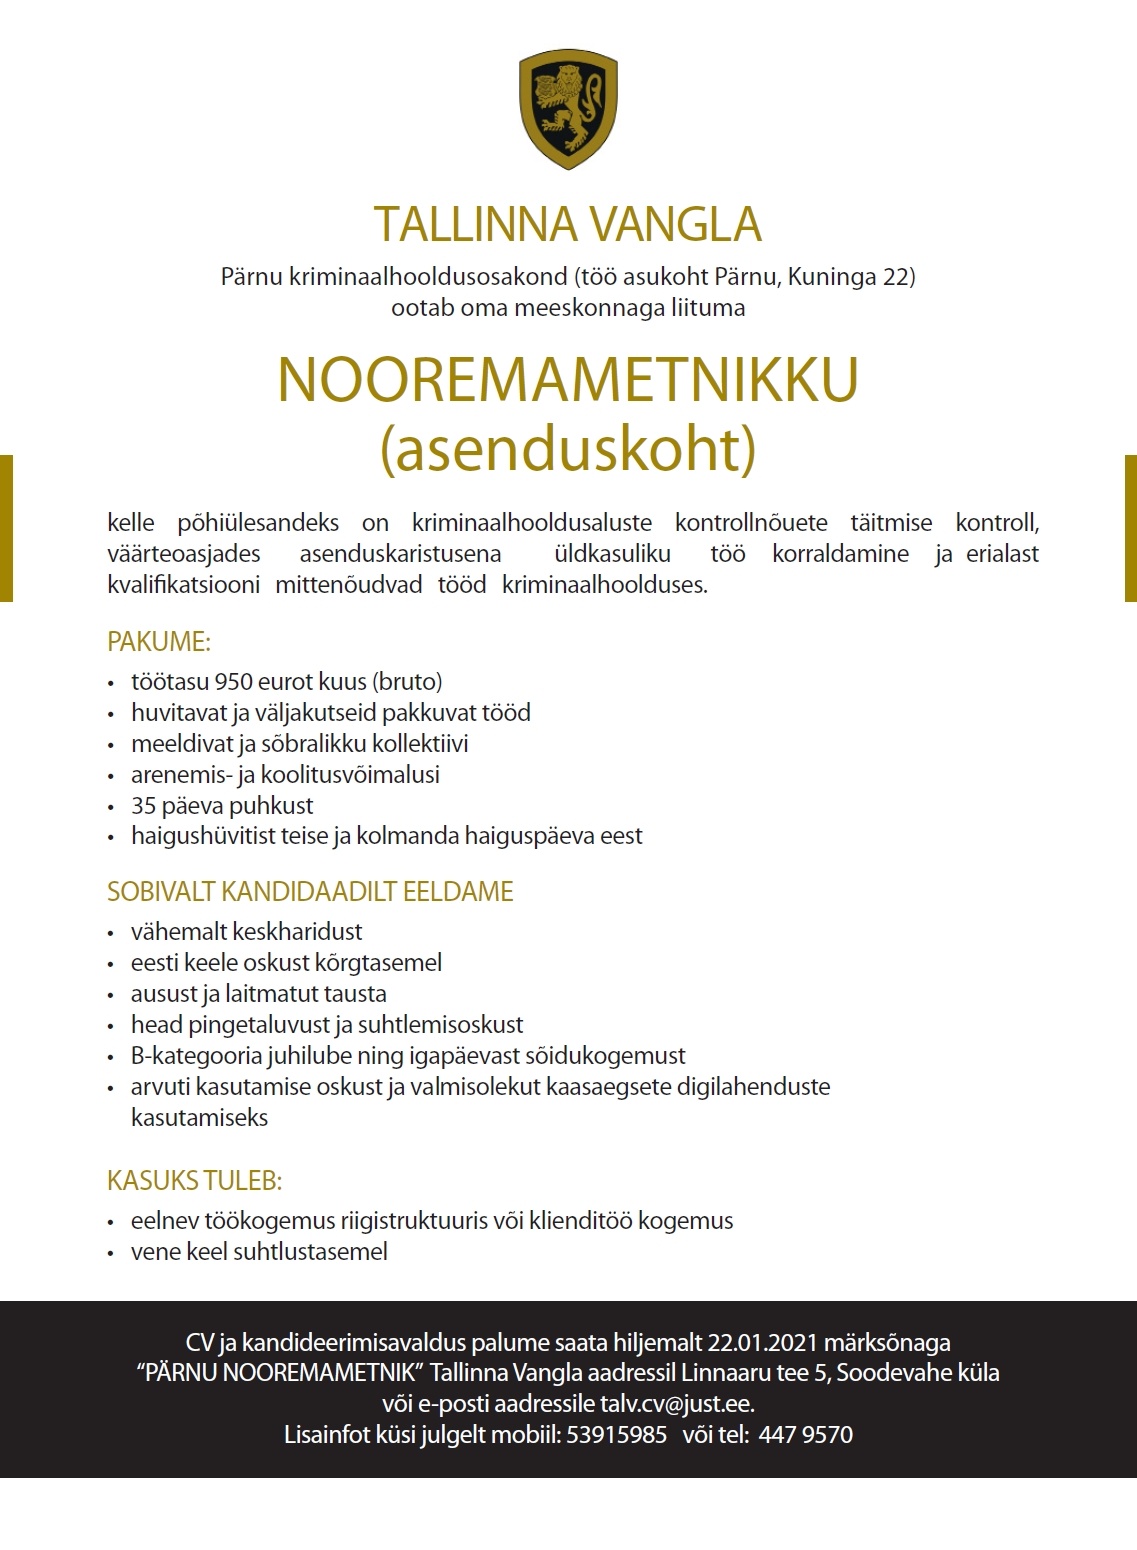 Tallinna Vangla Nooremametnik (asenduskoht)